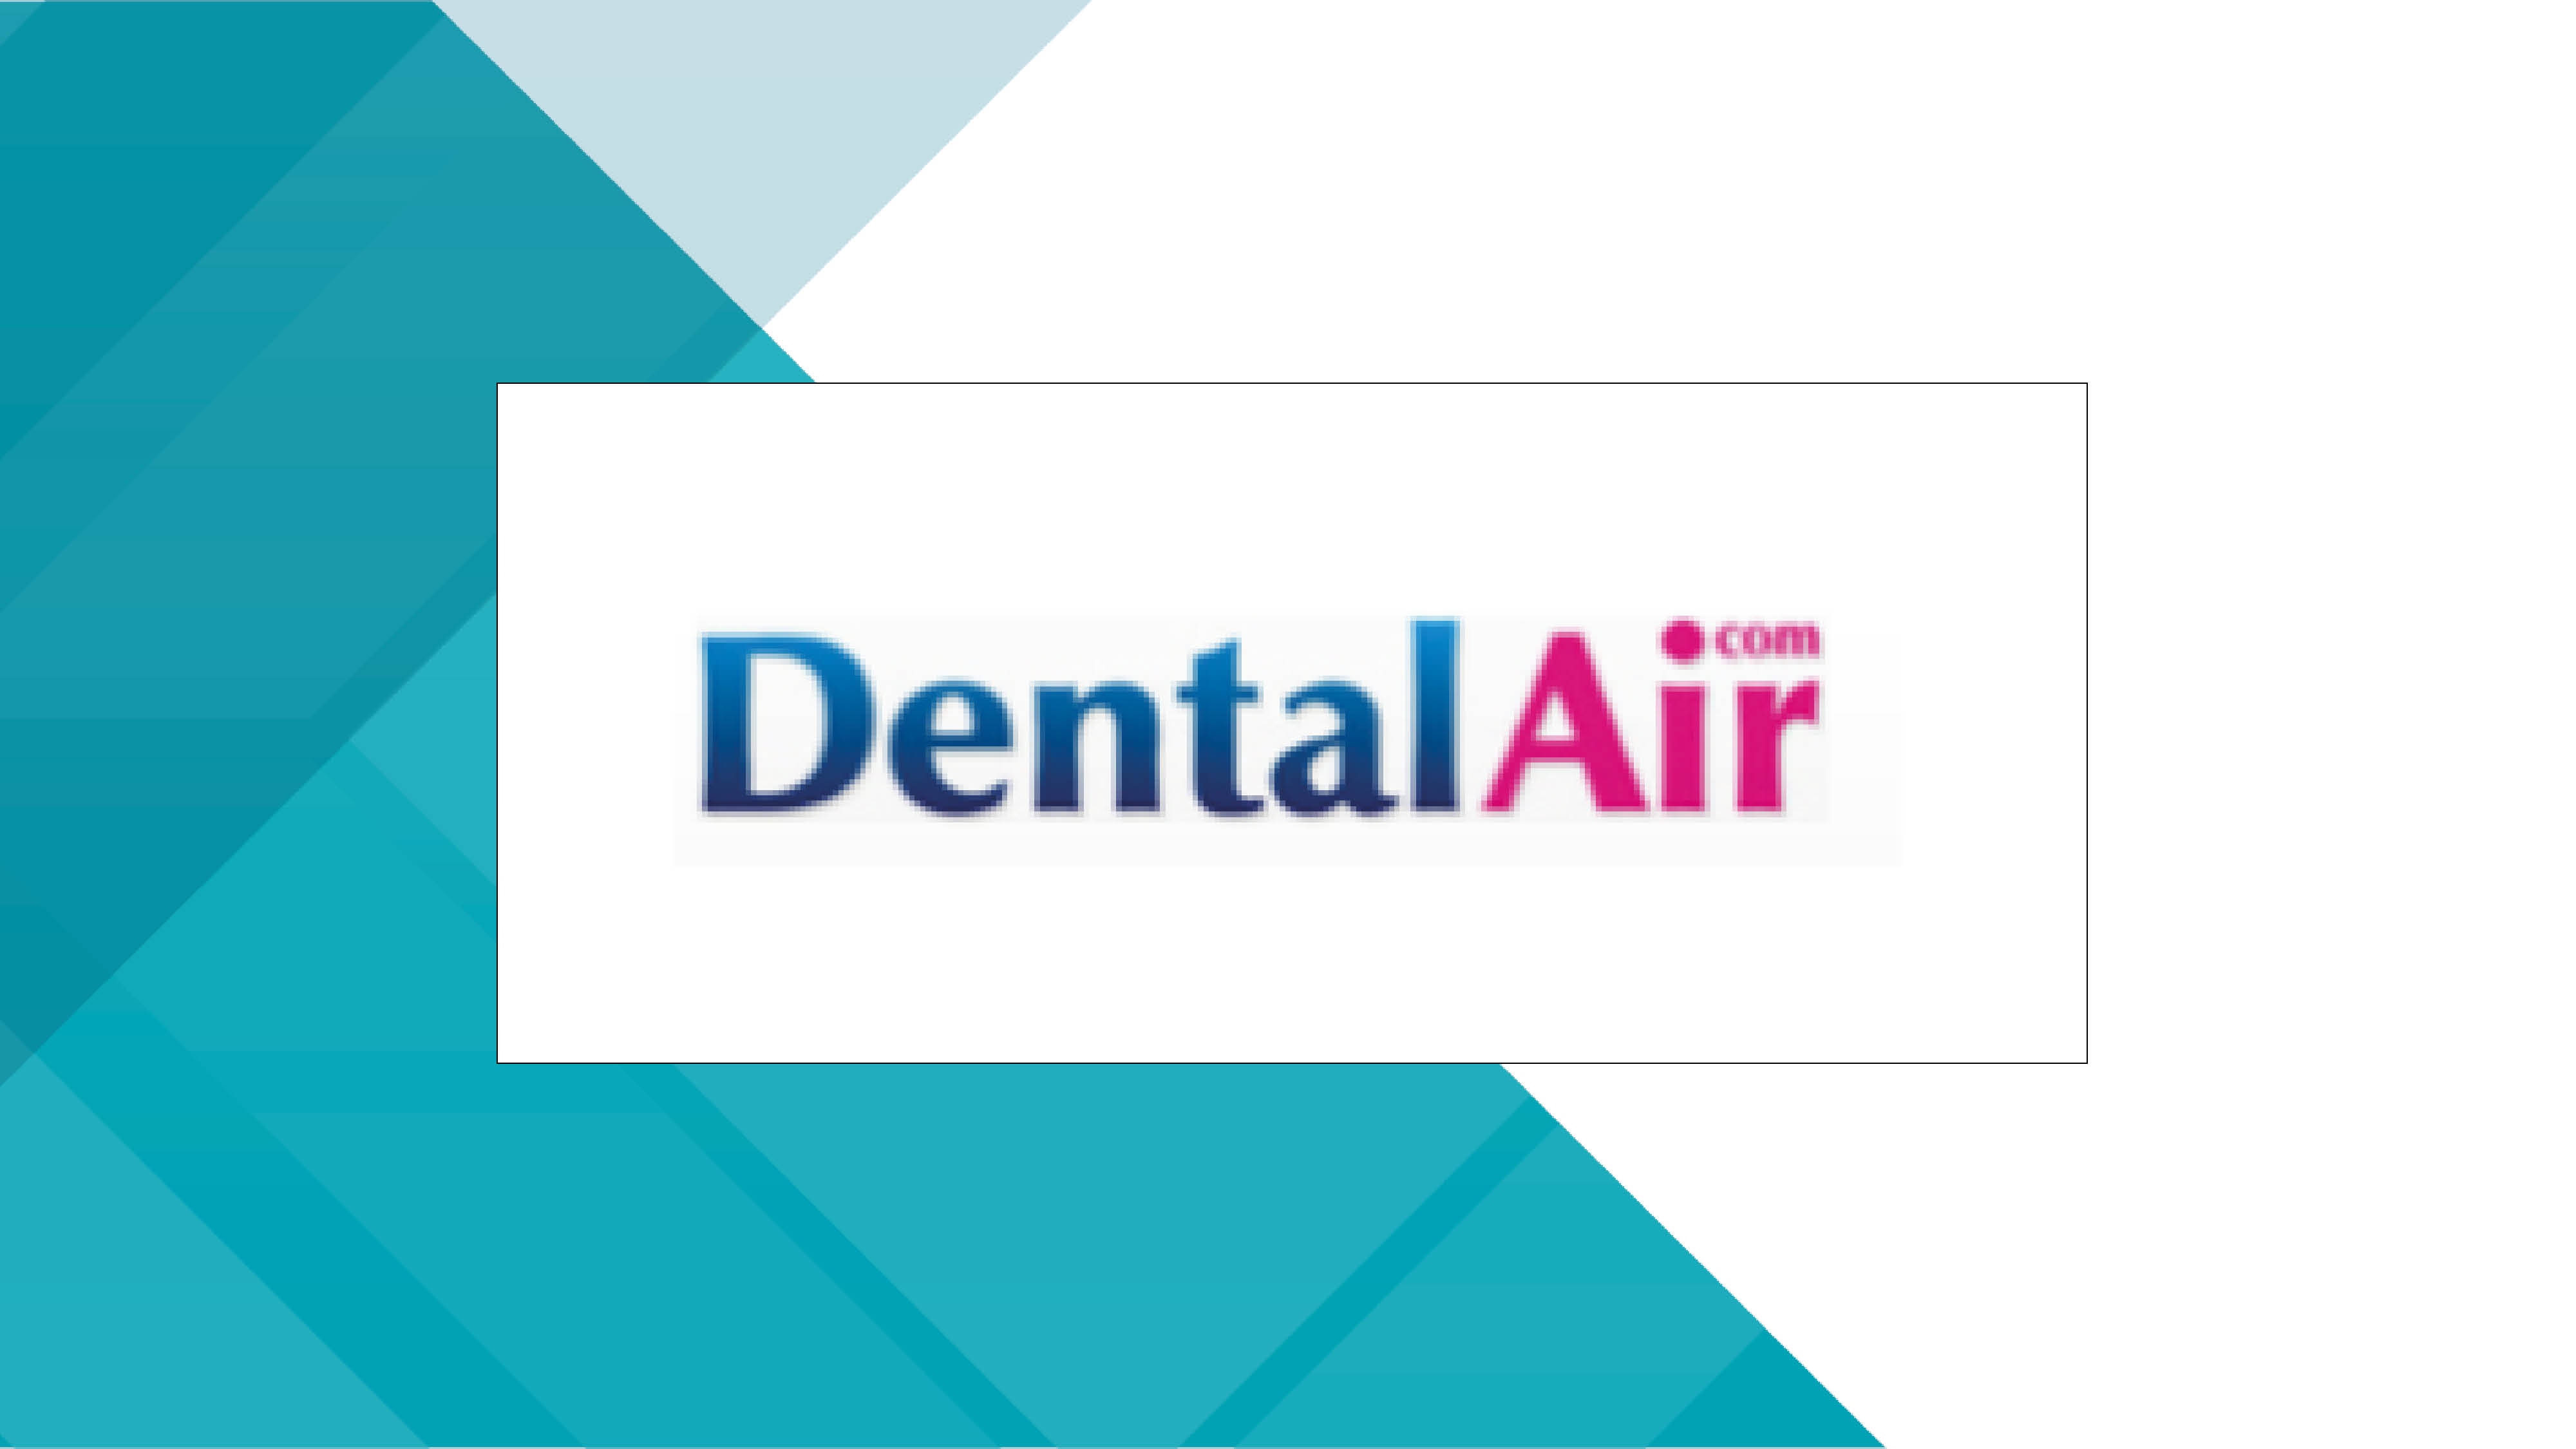 Dental air